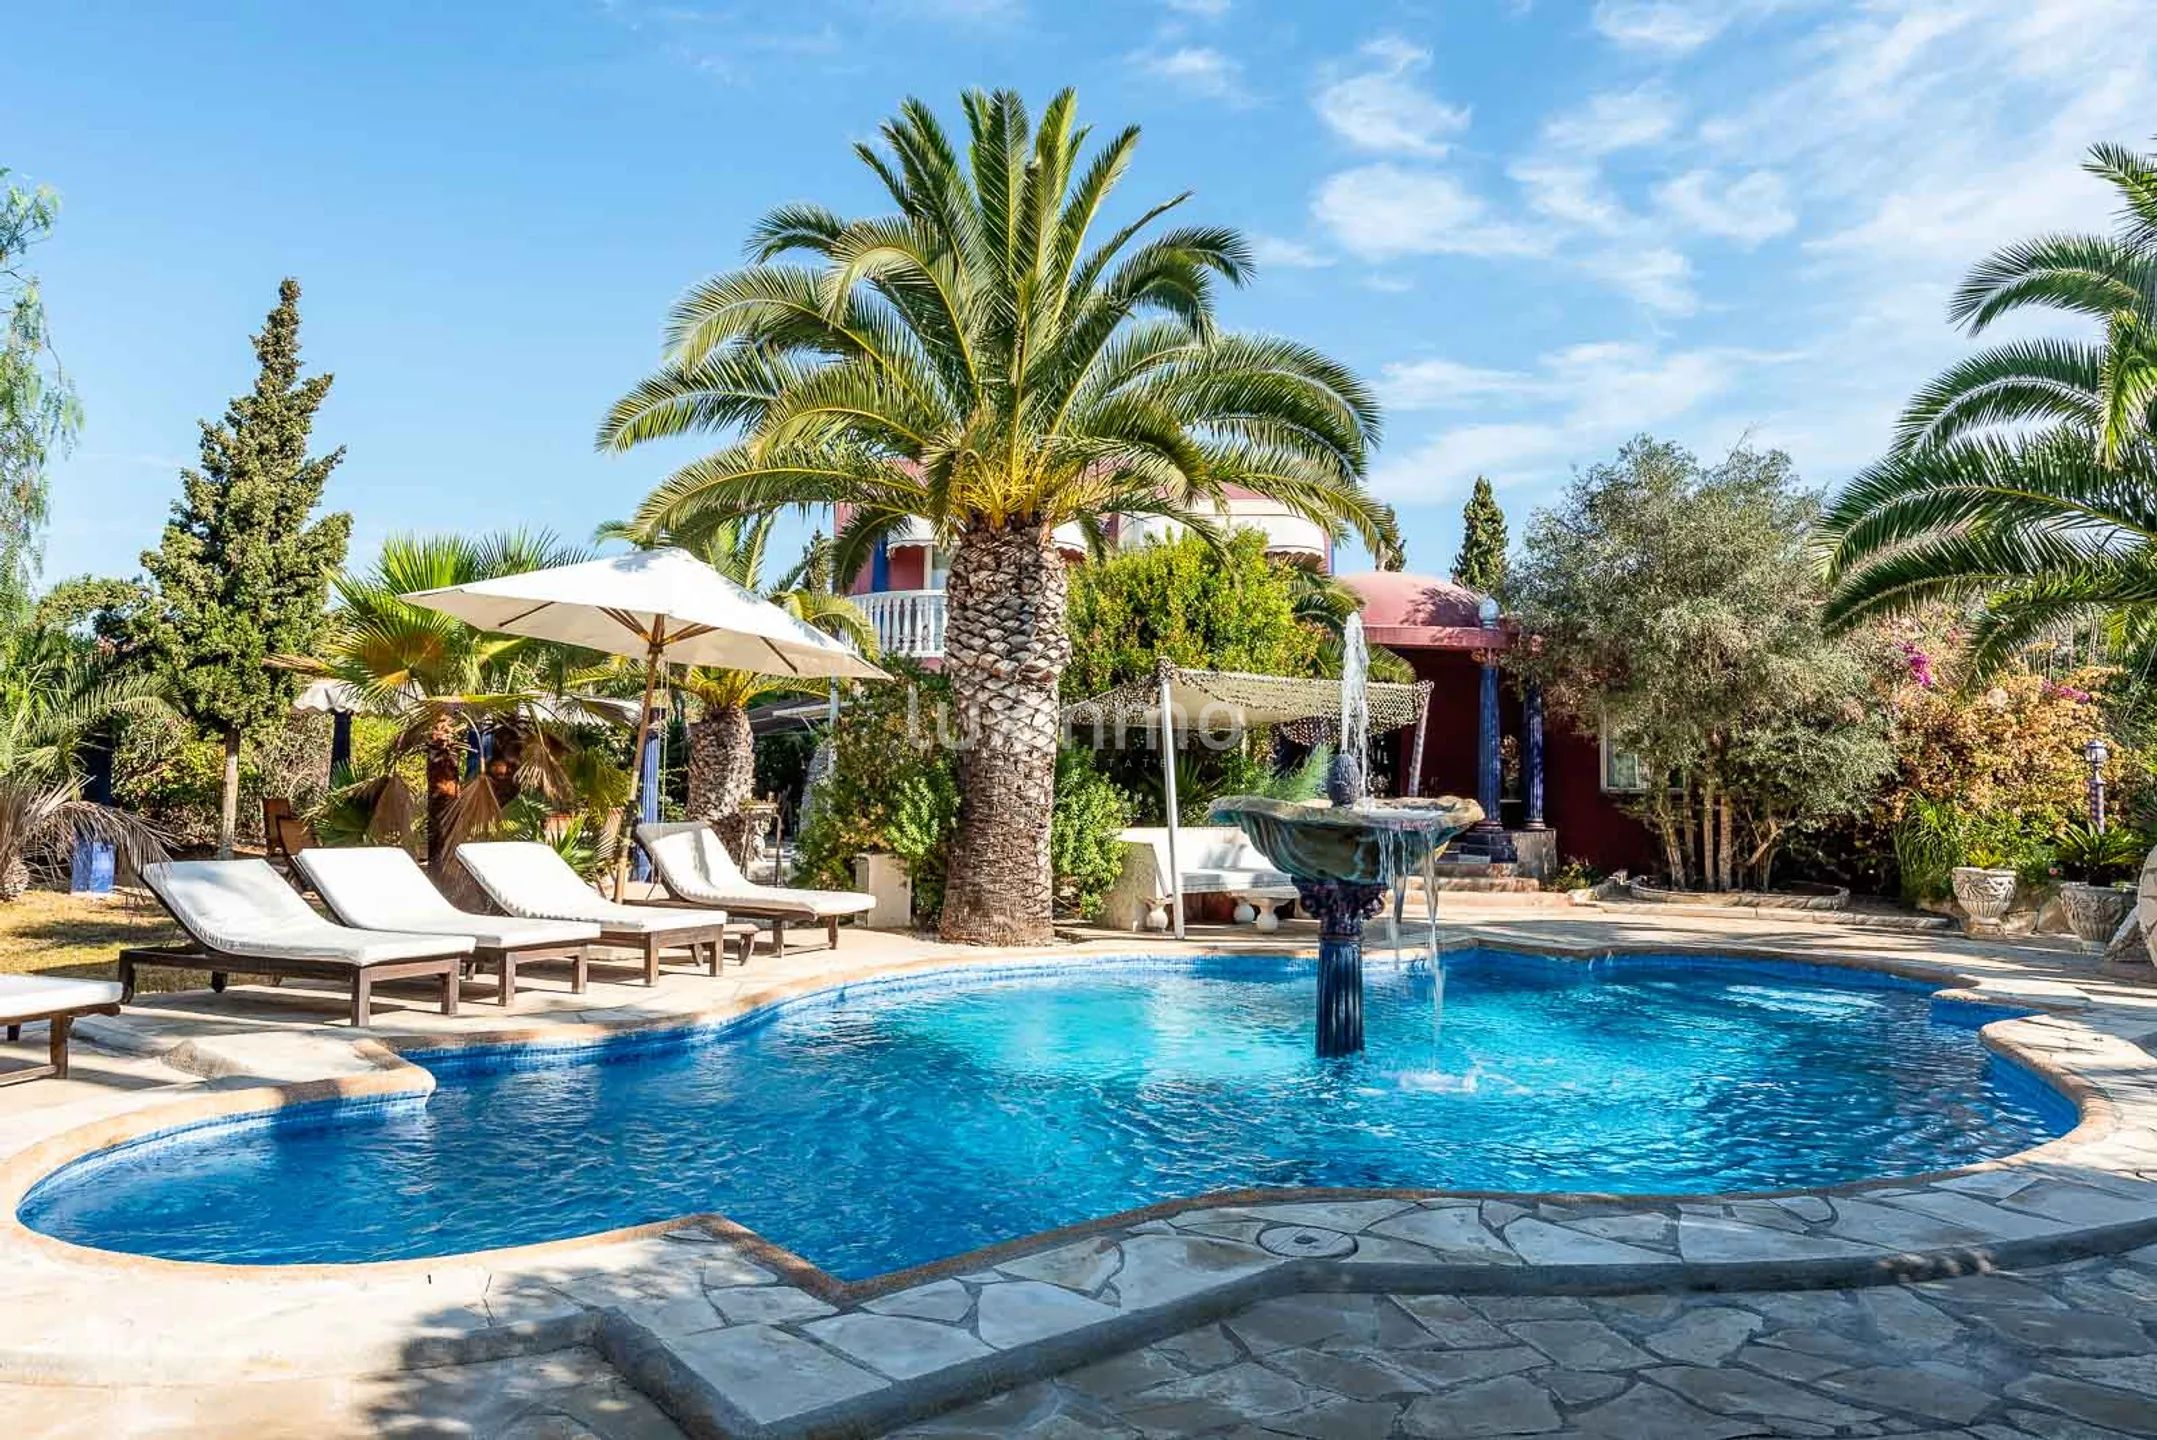 Villa Aladin: Auténtica villa de inspiración árabe con jardín tropical en Sant Jordi, Ibiza